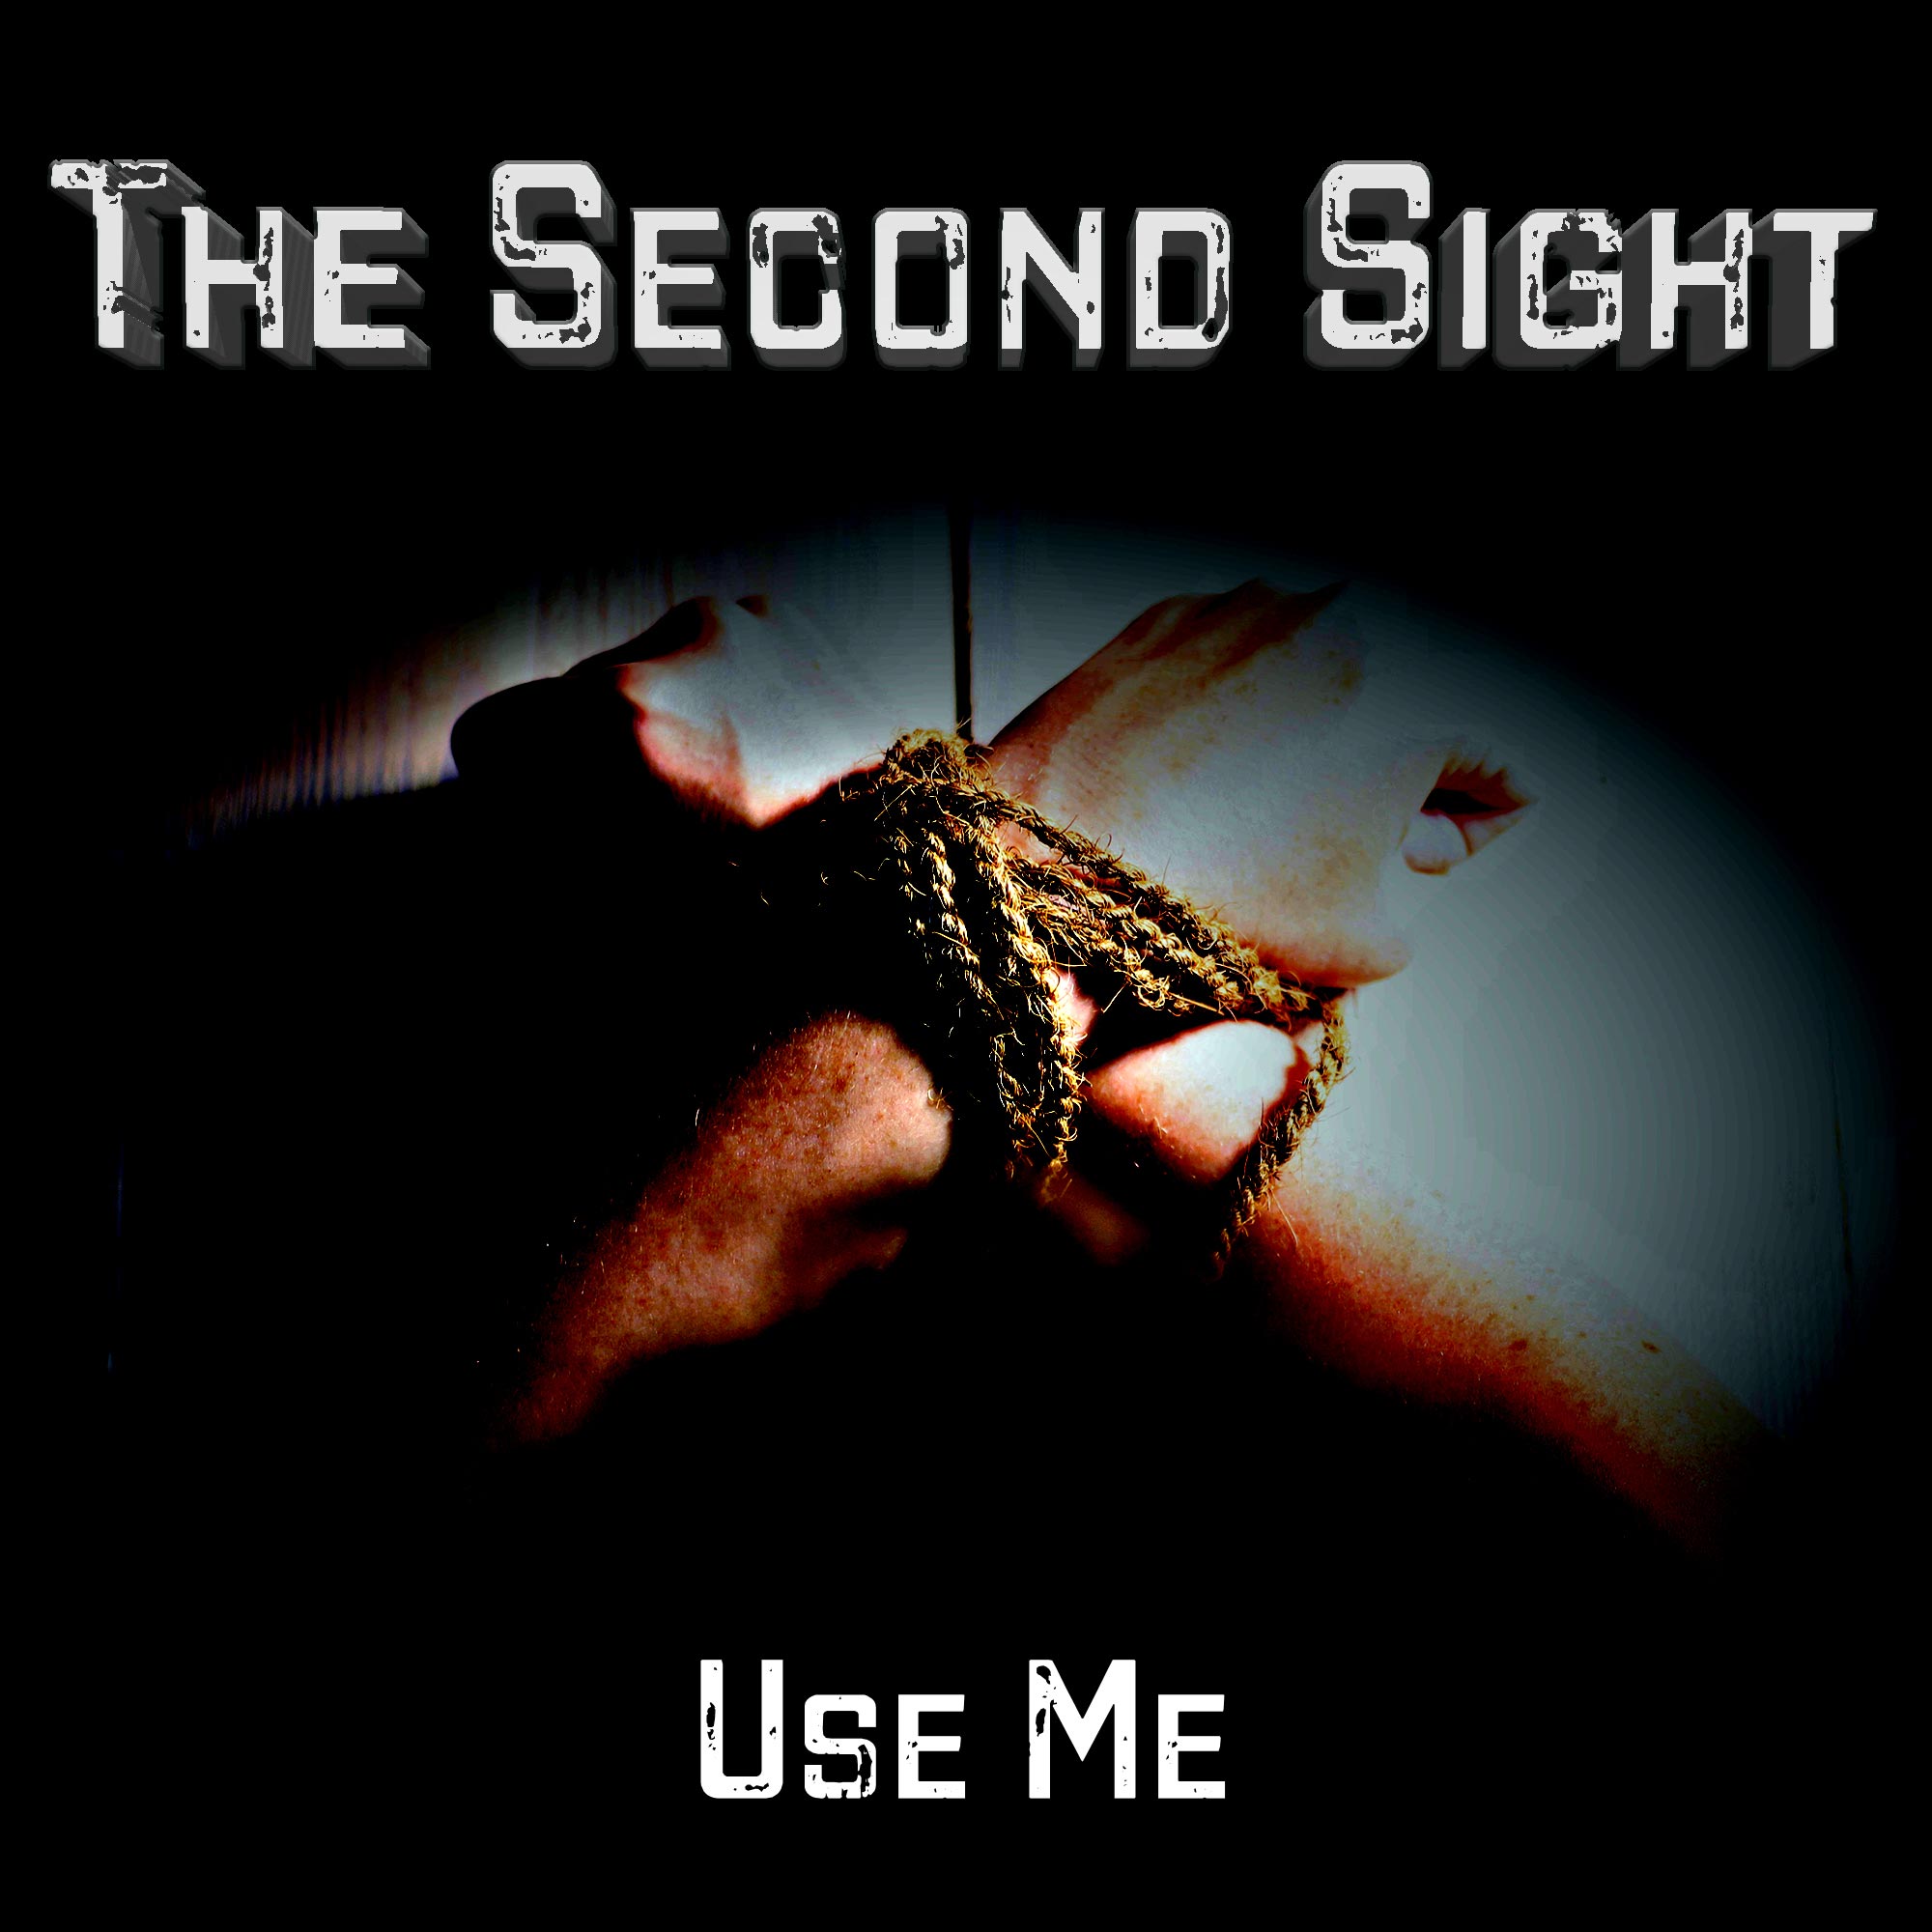 The Second Sight - Use me - The Second Sight - Use me